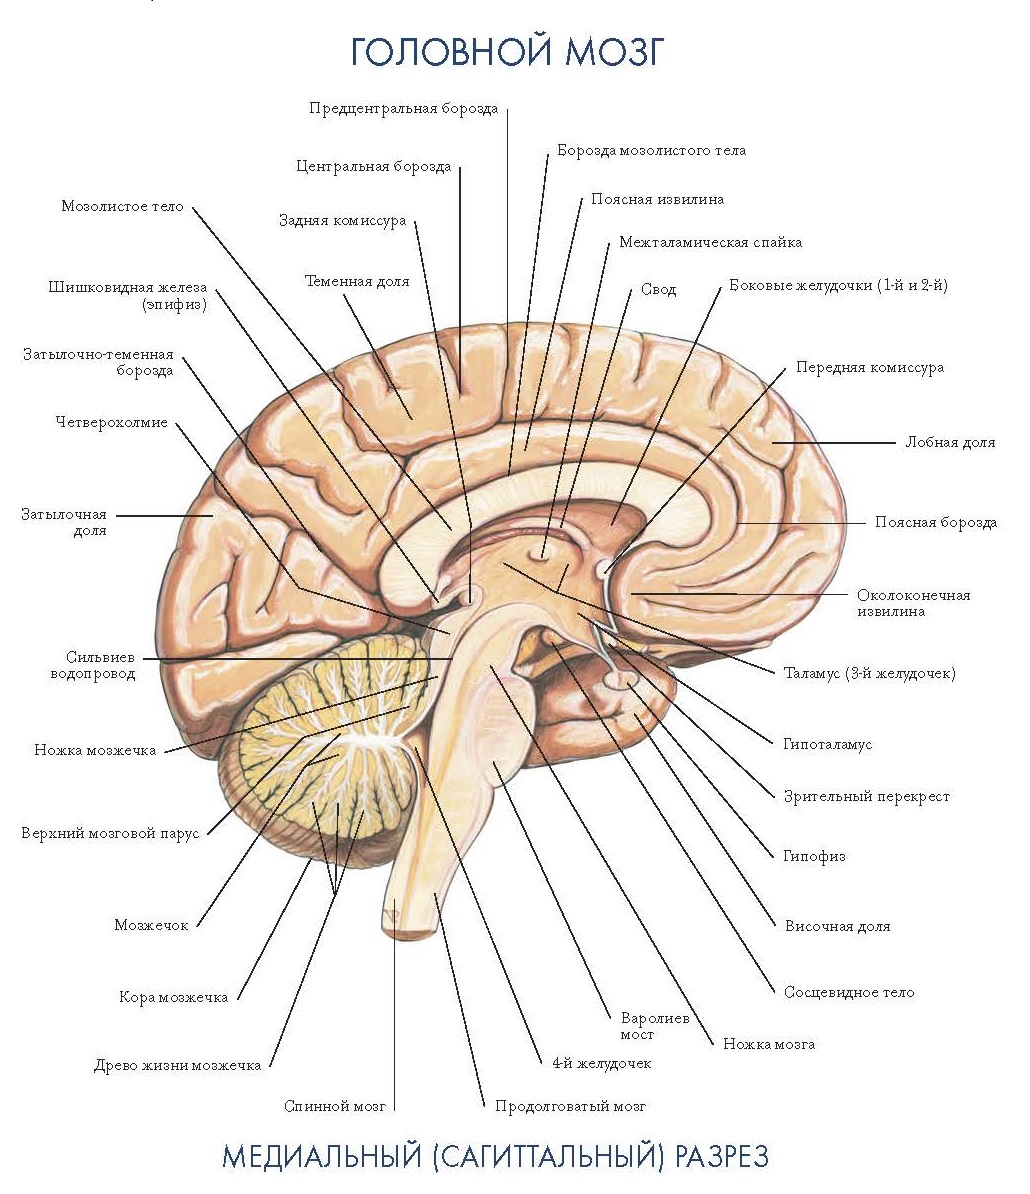 Отделы головного мозга на сагиттальном срезе